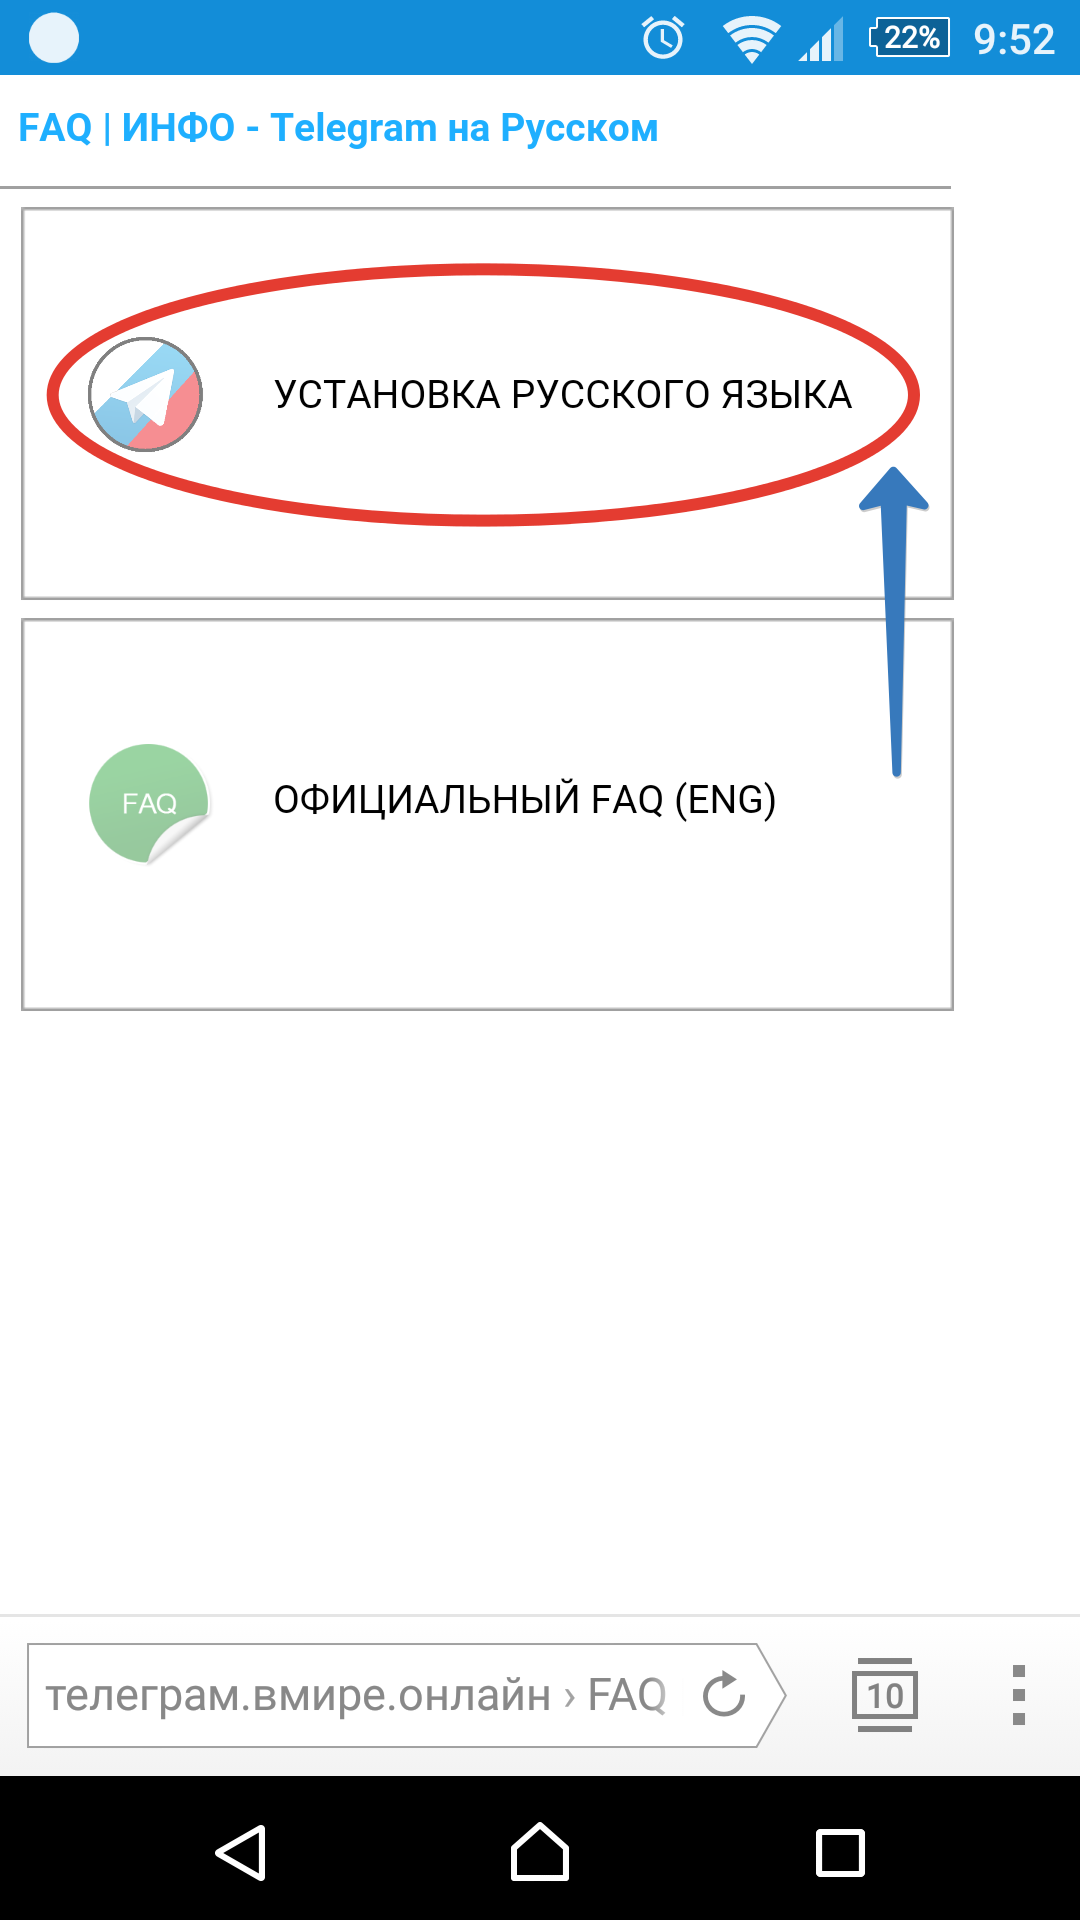 Установить телеграмм на русском языке на телефон бесплатно андроид пошагово фото 94